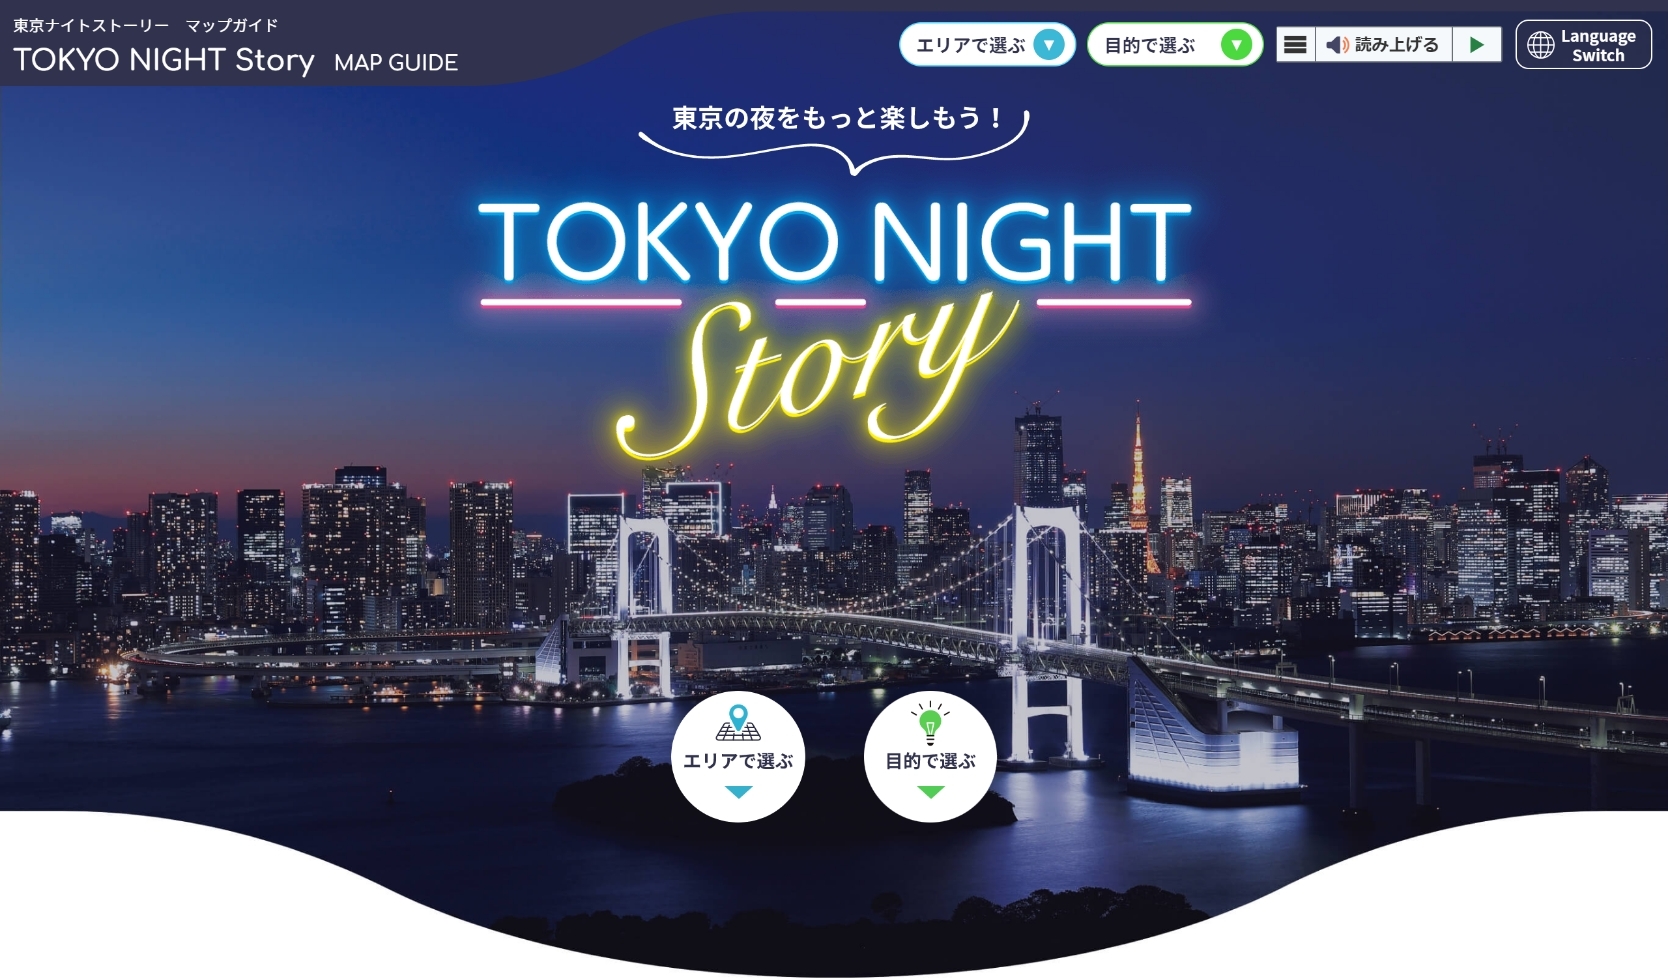 TOKYO NIGHT Story